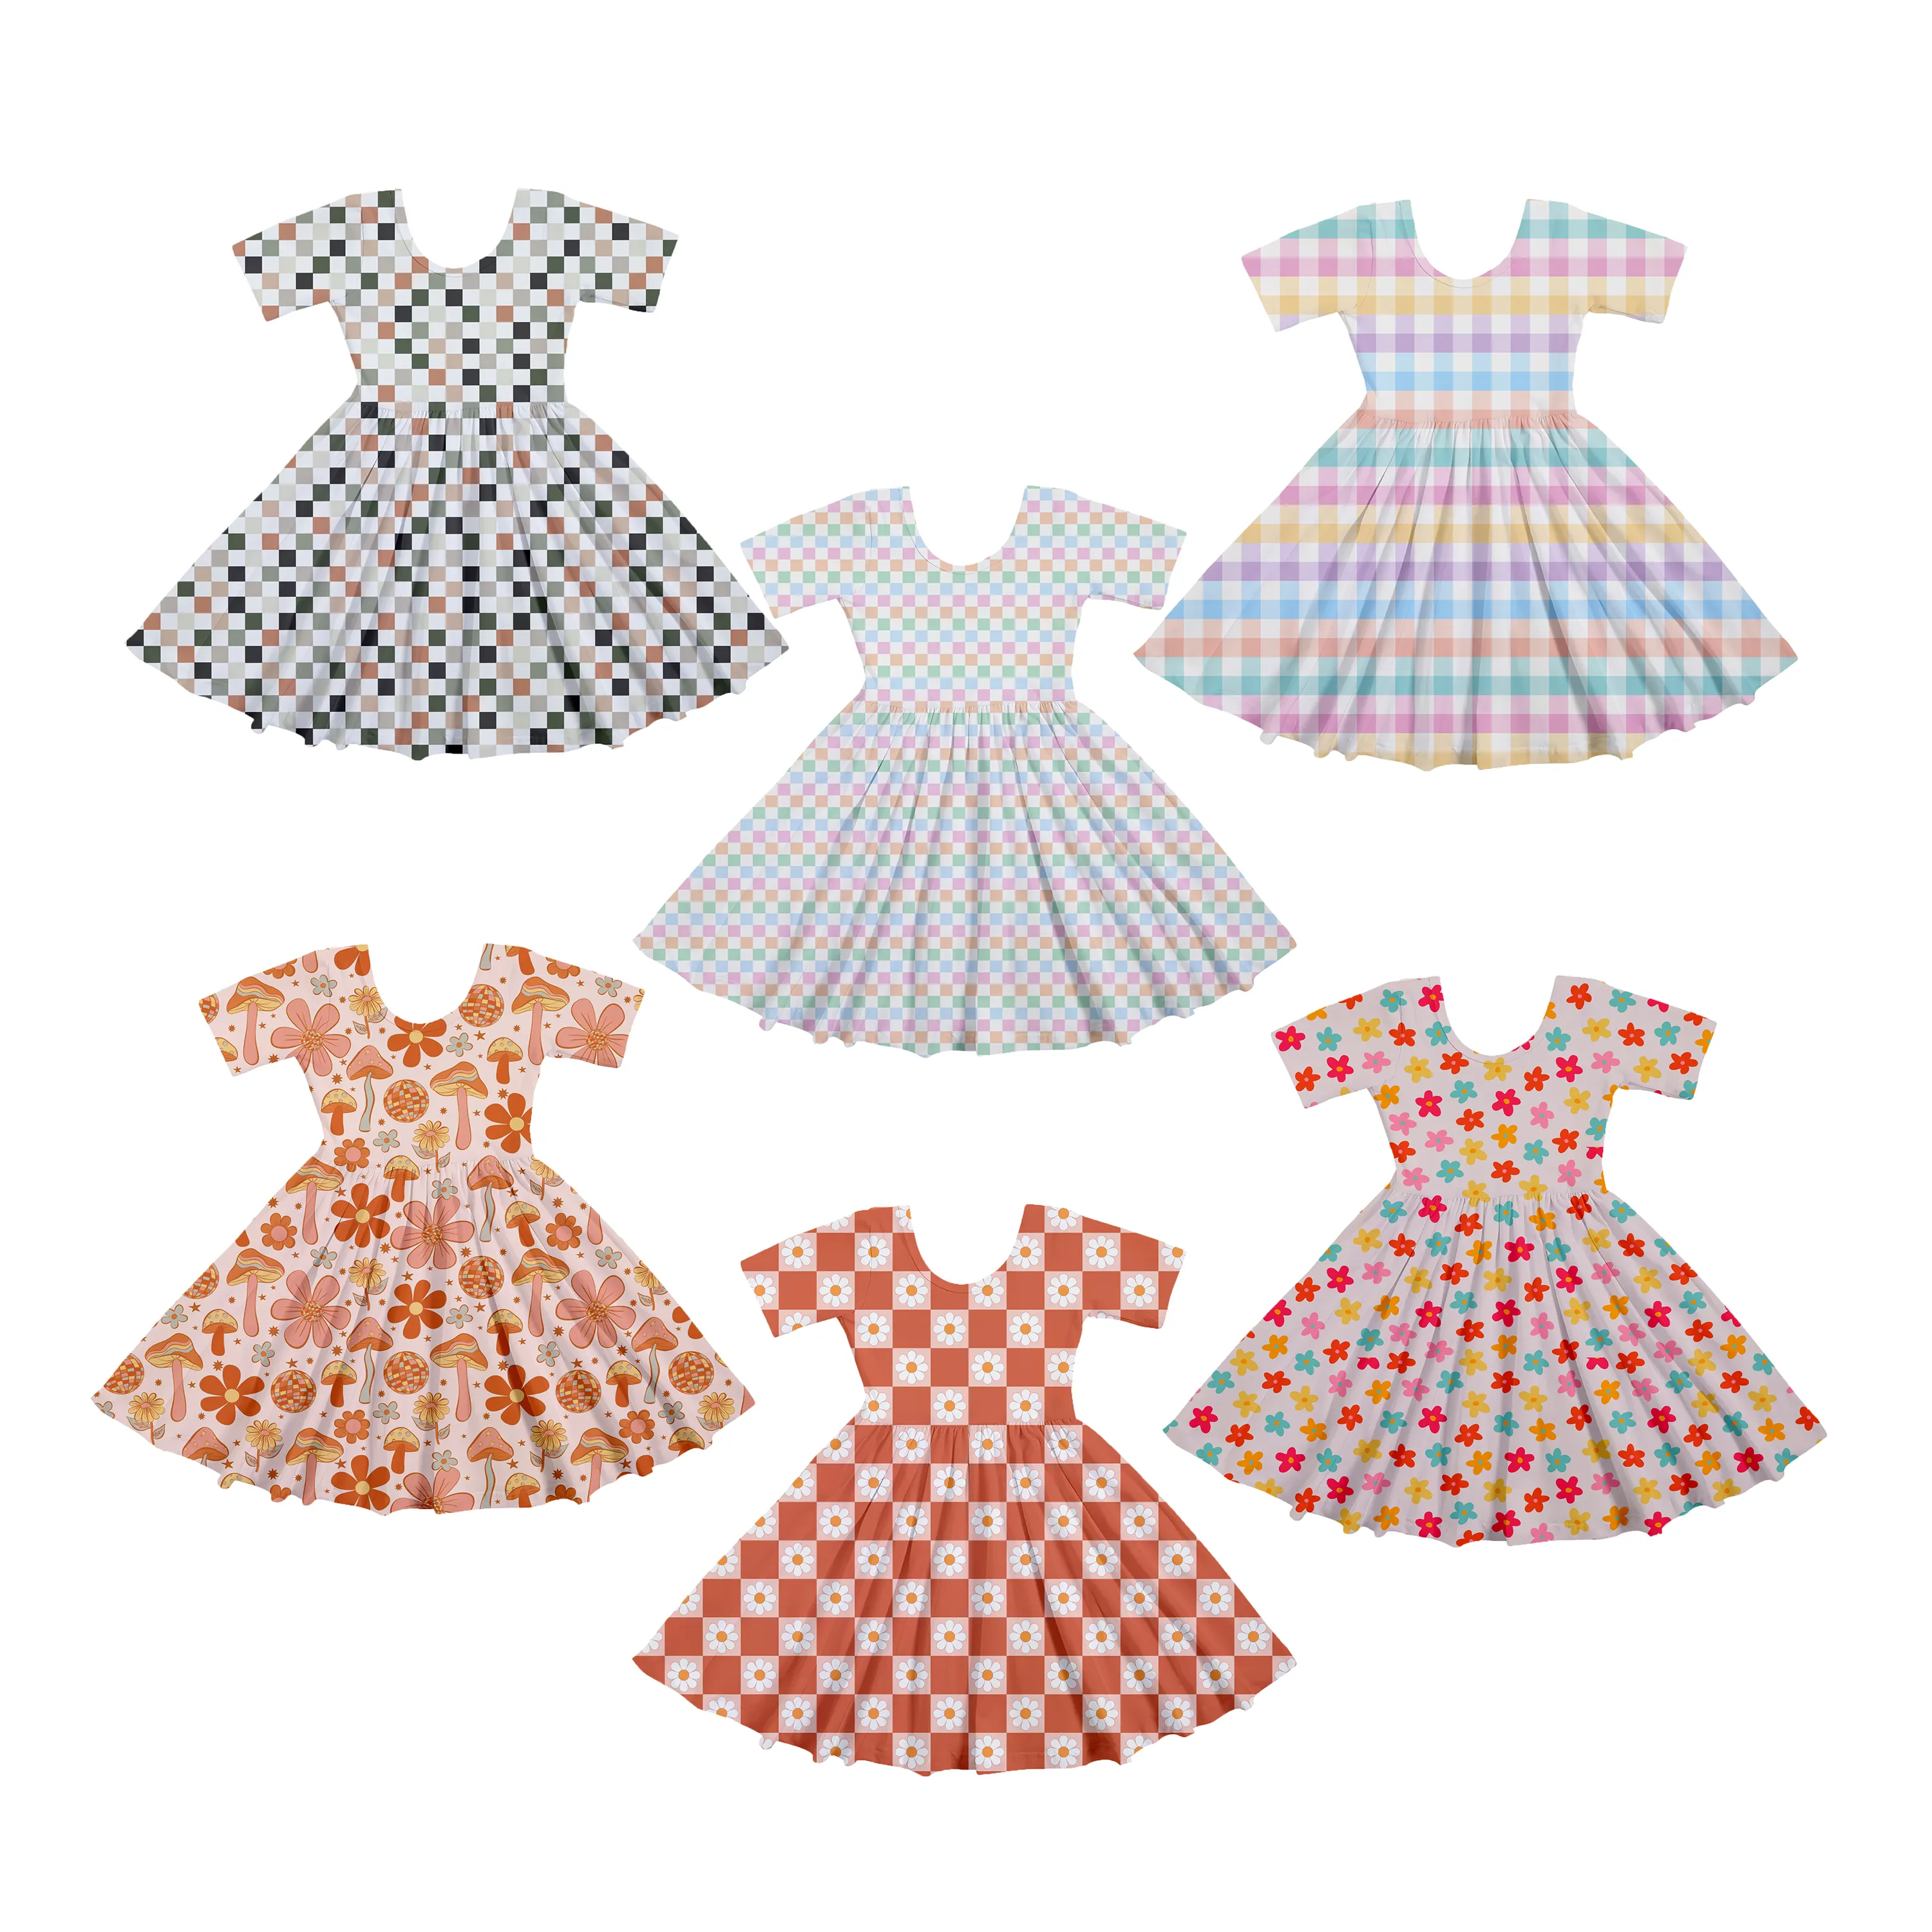 फैशन न्यू फ्लावर लड़कियों की पोशाकें छोटी आस्तीन वाली ओवर प्रिंट बच्चों की पोशाक बच्चों की लड़कियों के लिए ग्रीष्मकालीन बच्चों की पोशाकें